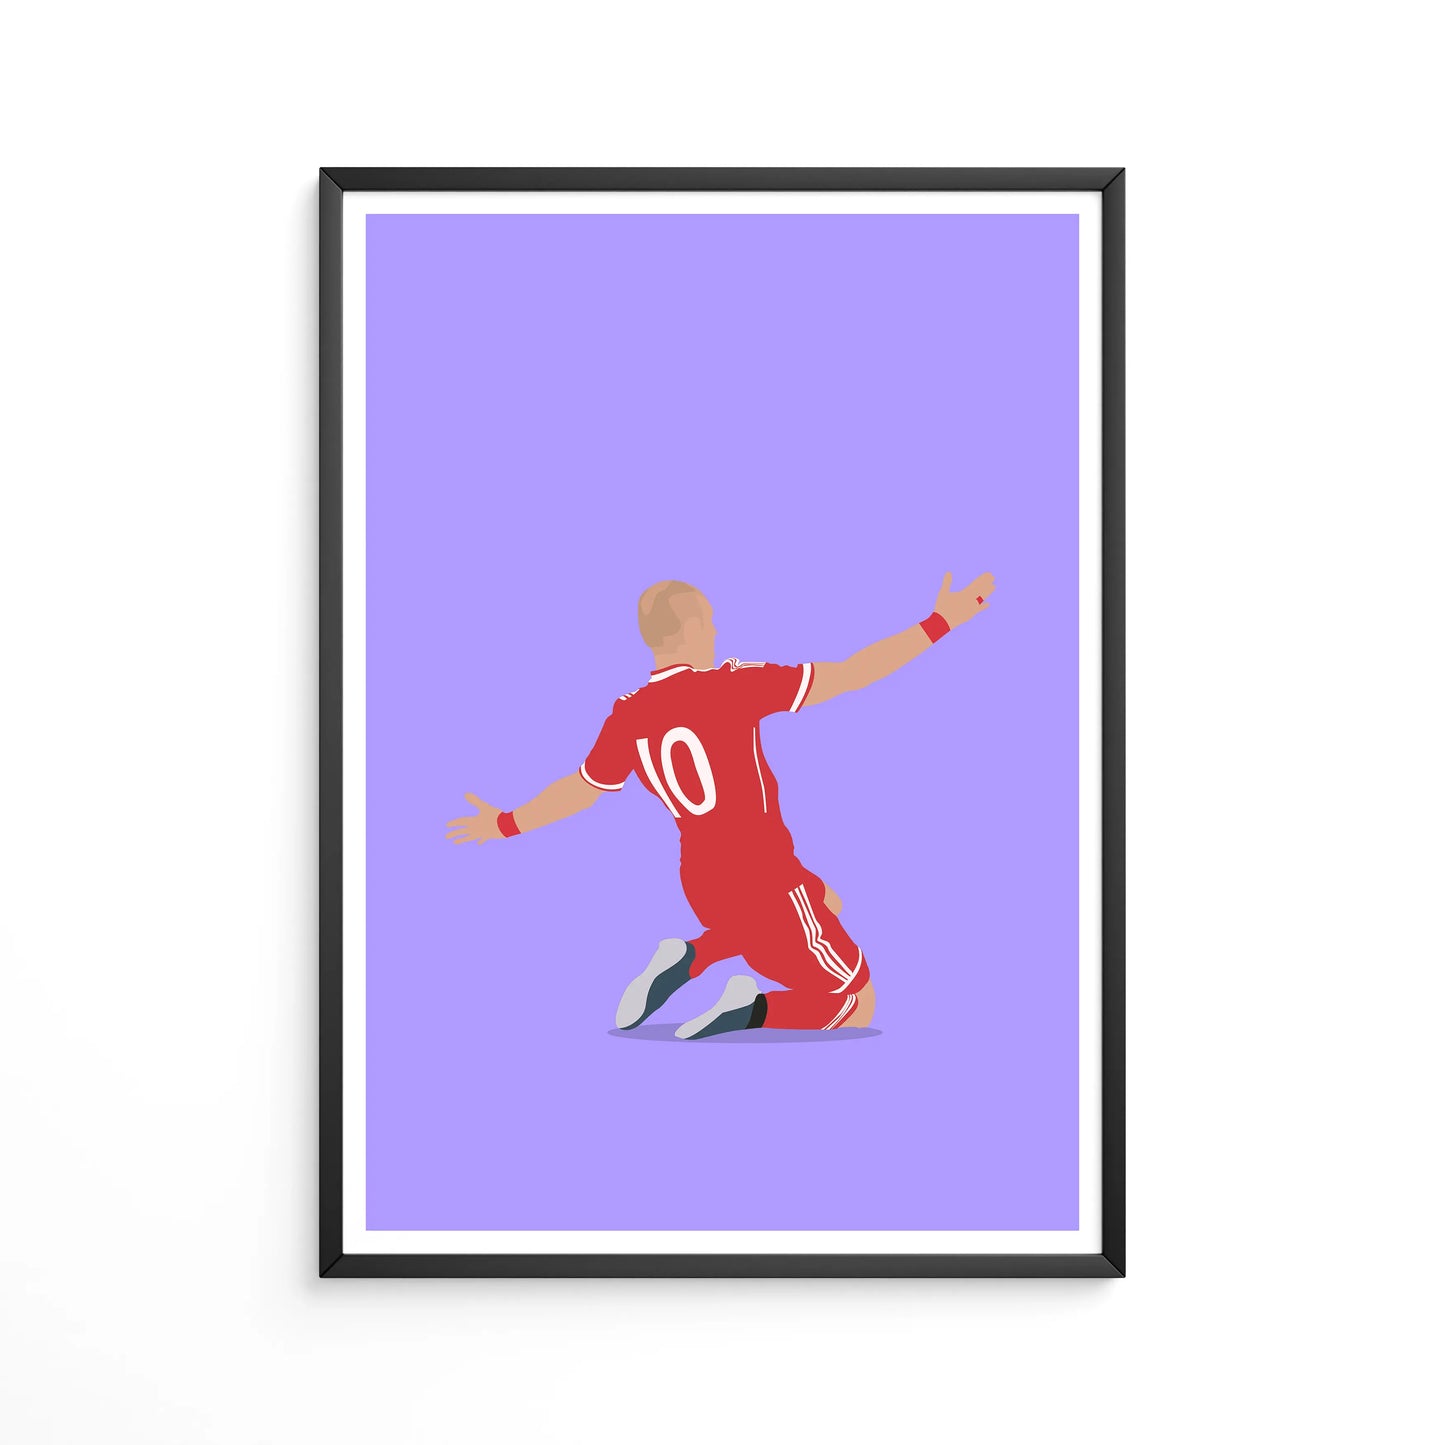 Robben slides through Wembley